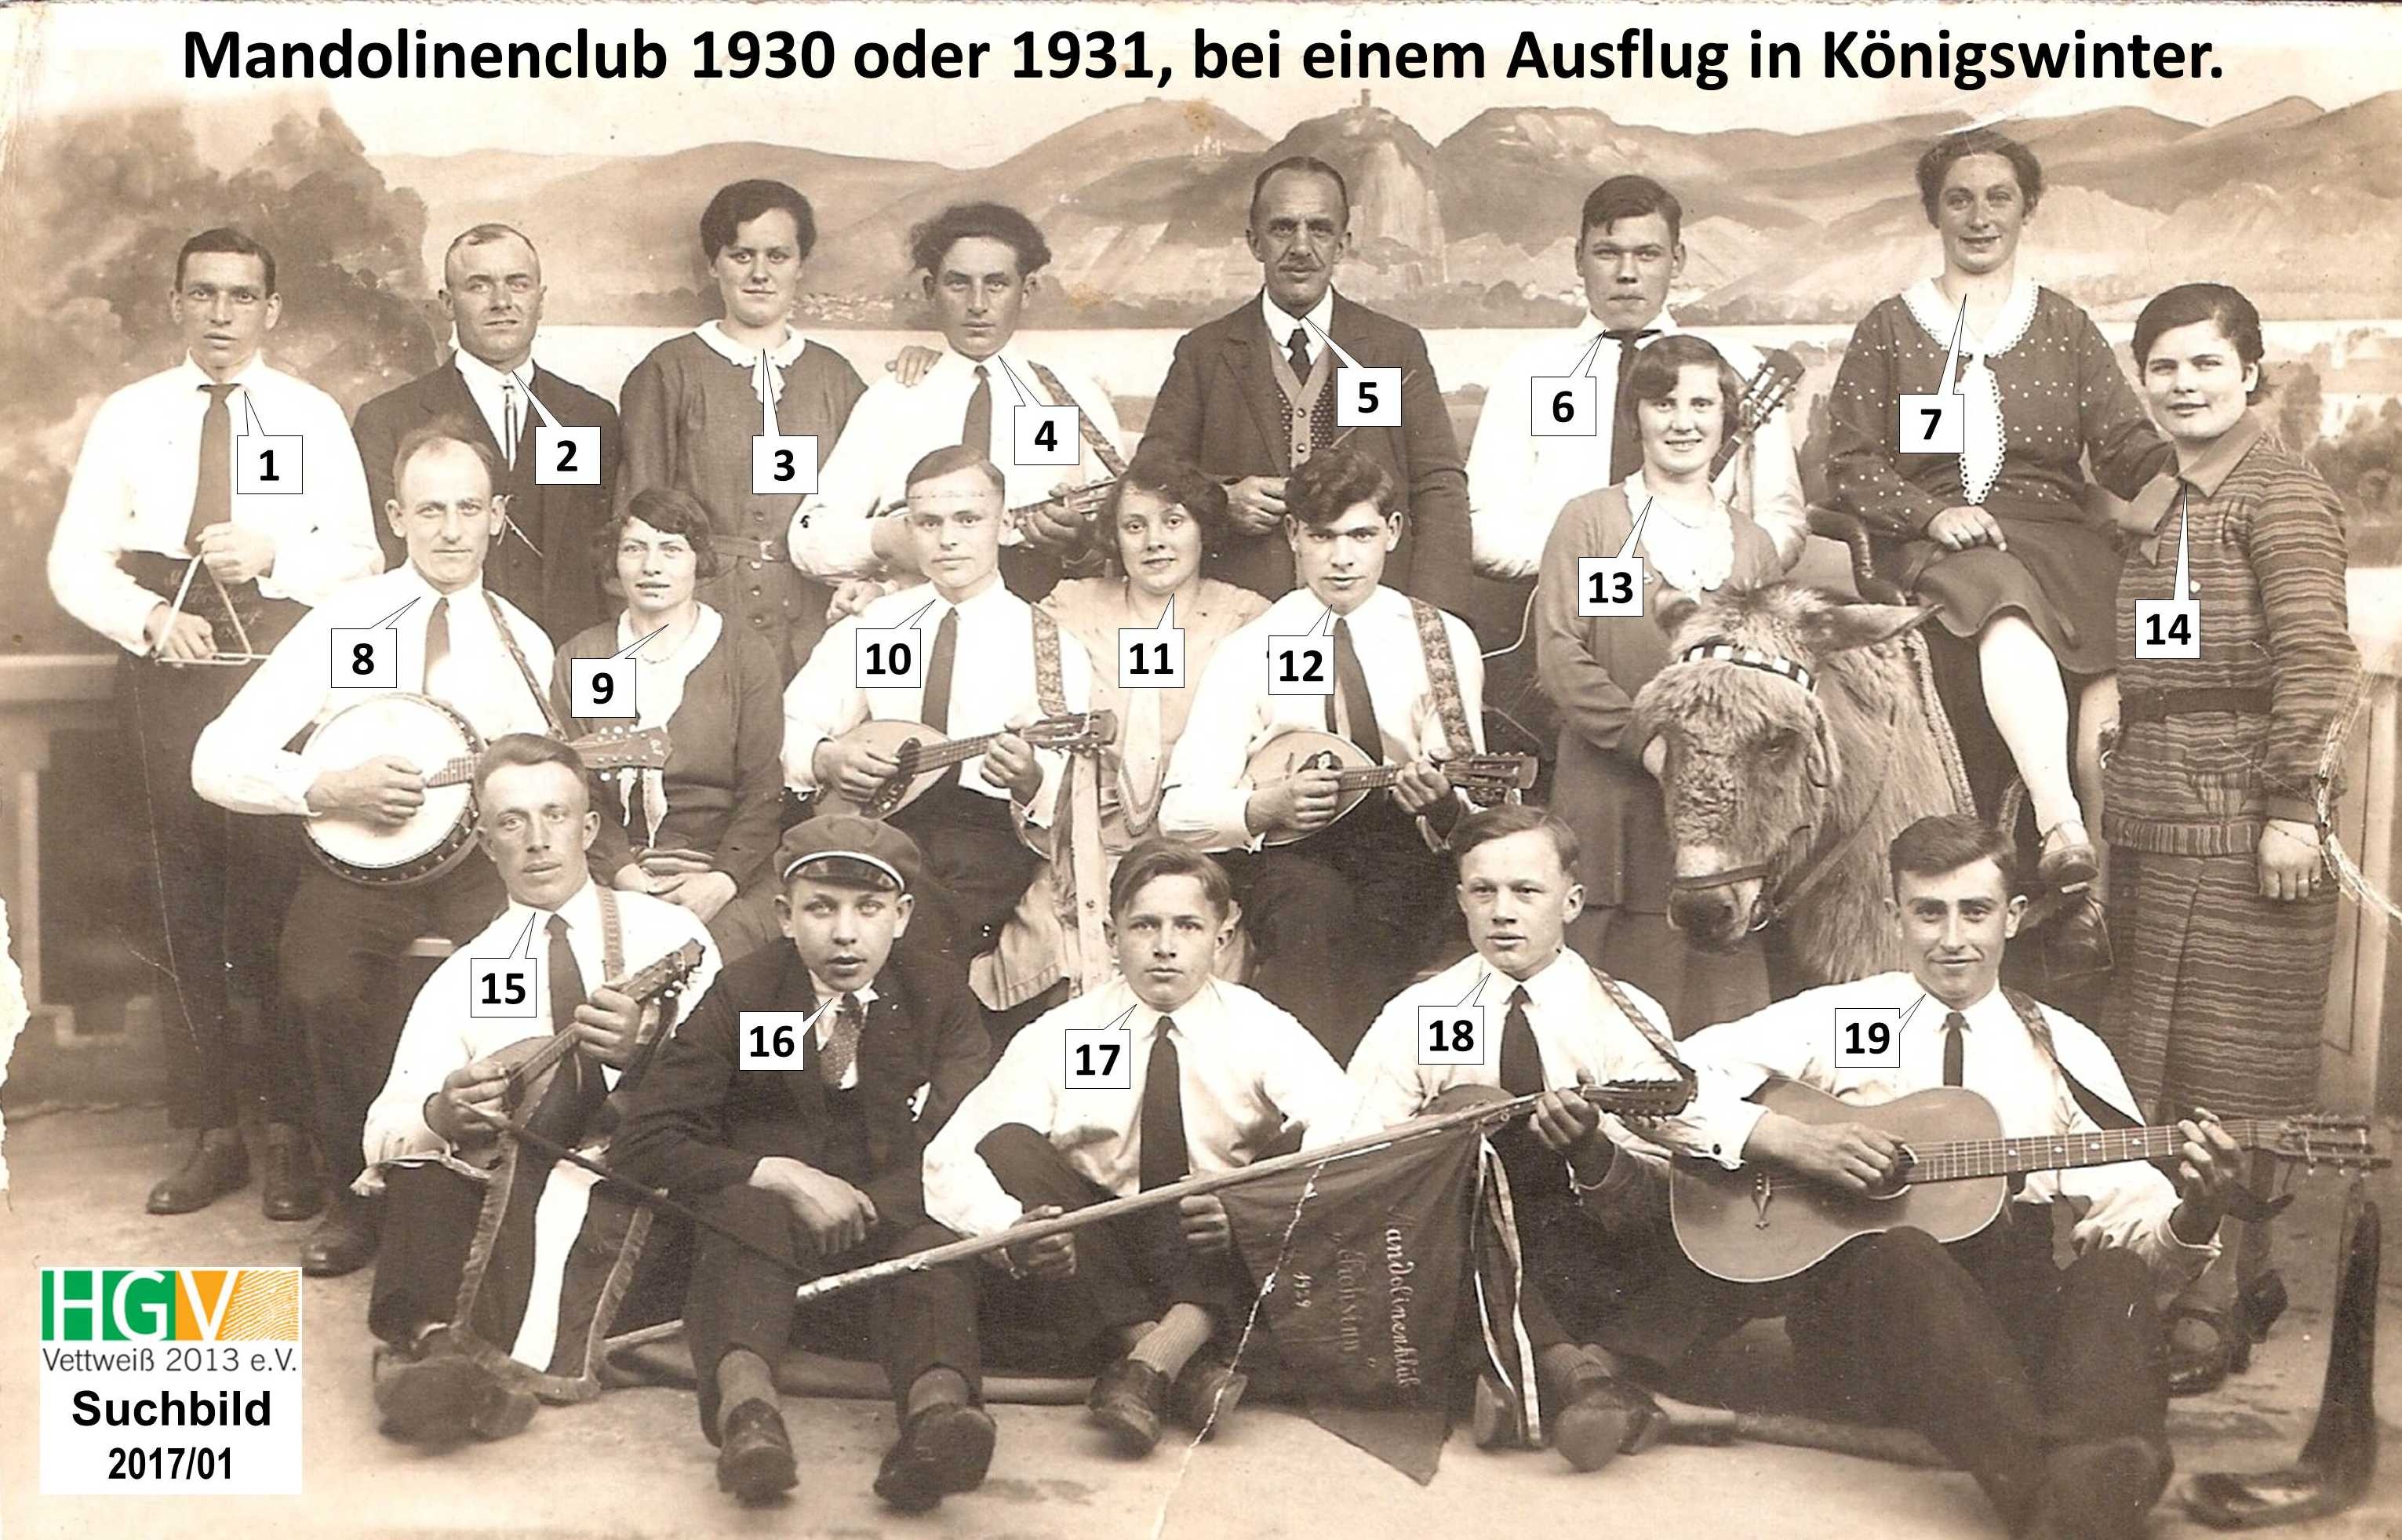 Mandolinenclub 1930 oder 1931, bei einem Ausflug in Königswinter